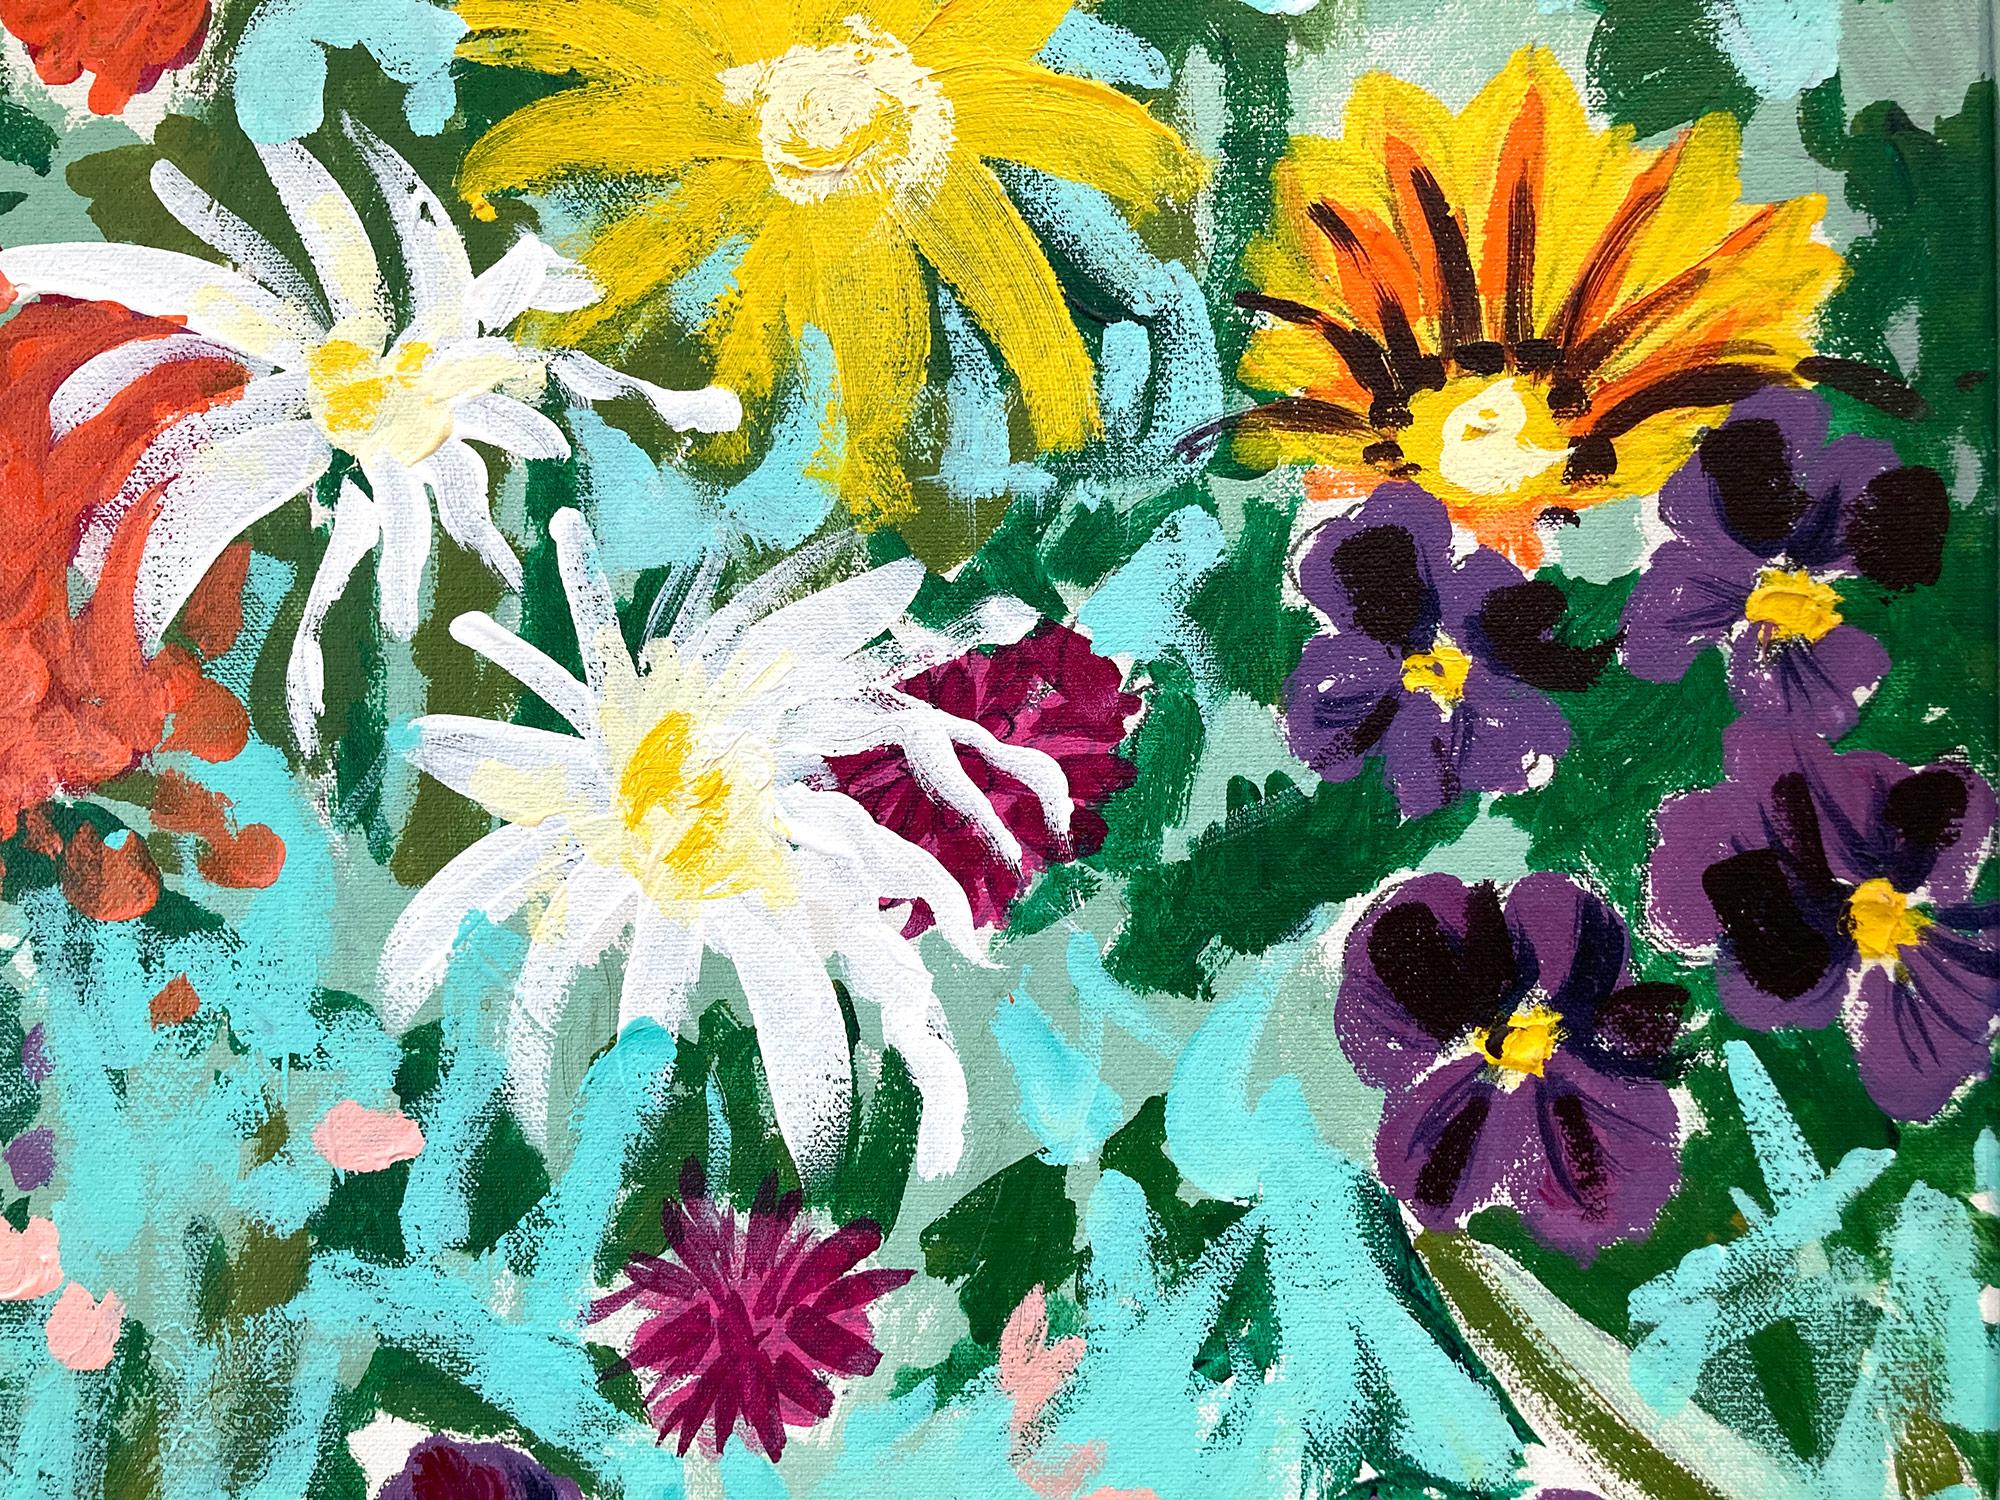 Ein lebhaftes Ölgemälde des amerikanischen Künstlers Gordon Micunis. Bekannt für farbenprächtige botanische und landschaftliche Gemälde, Theaterkulissen und Kostüme, strahlt dieses Stück Farbe und Licht in diesem hellen Blumenmuster aus. Blumen in